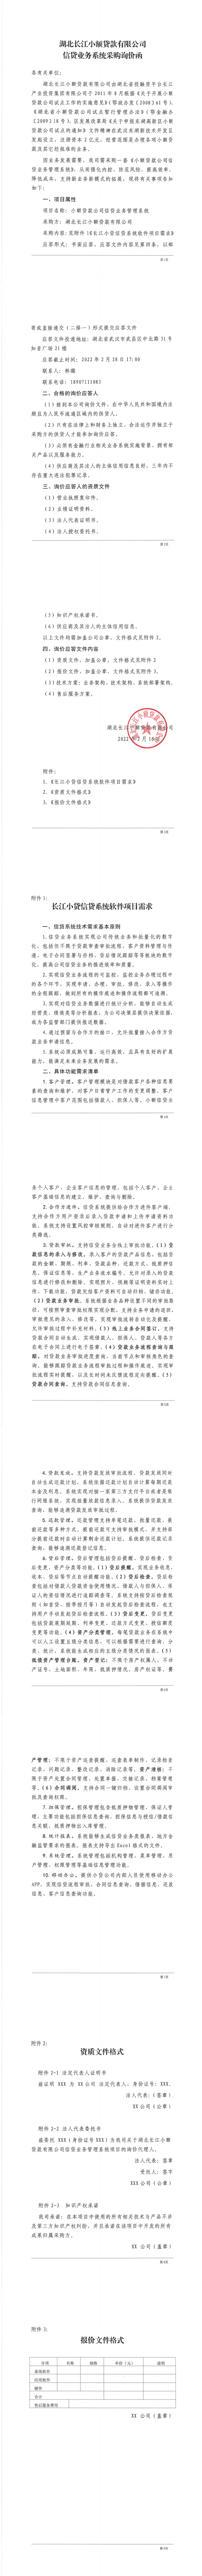 湖北长江小额贷款有限公司信贷业务系统采购询价函.png